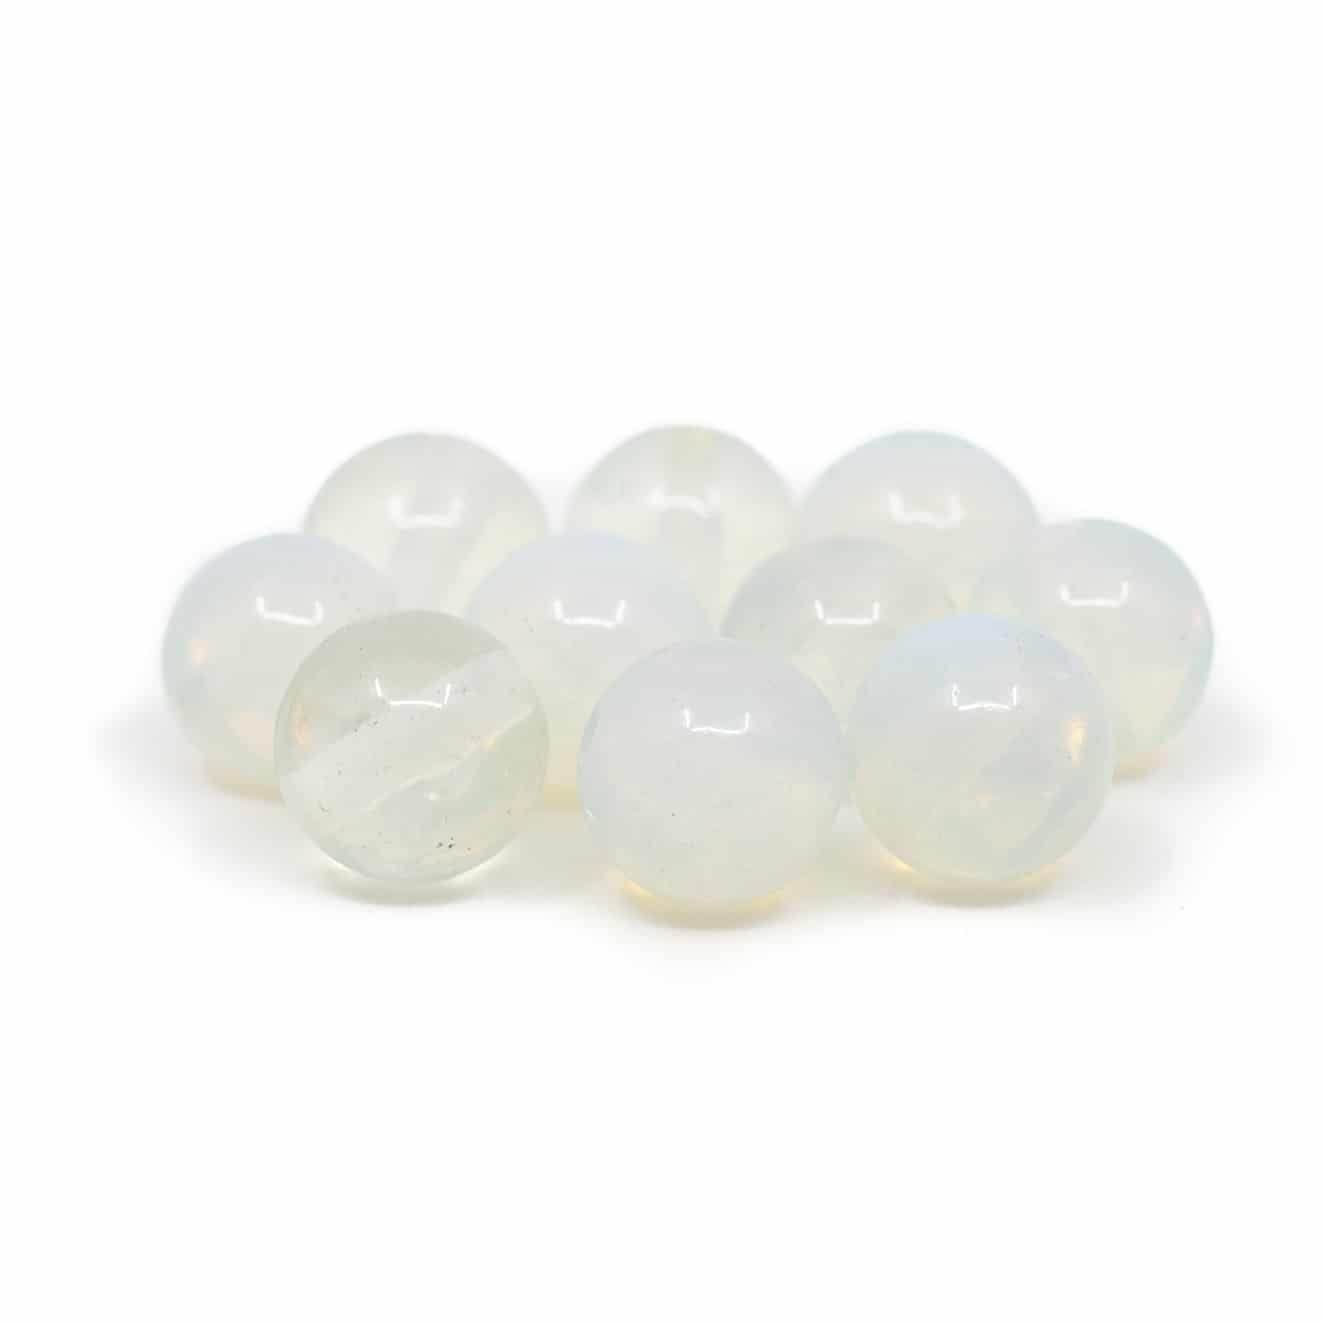 Edelstein Lose Perlen Opalit - 10 St-ck (8 mm)